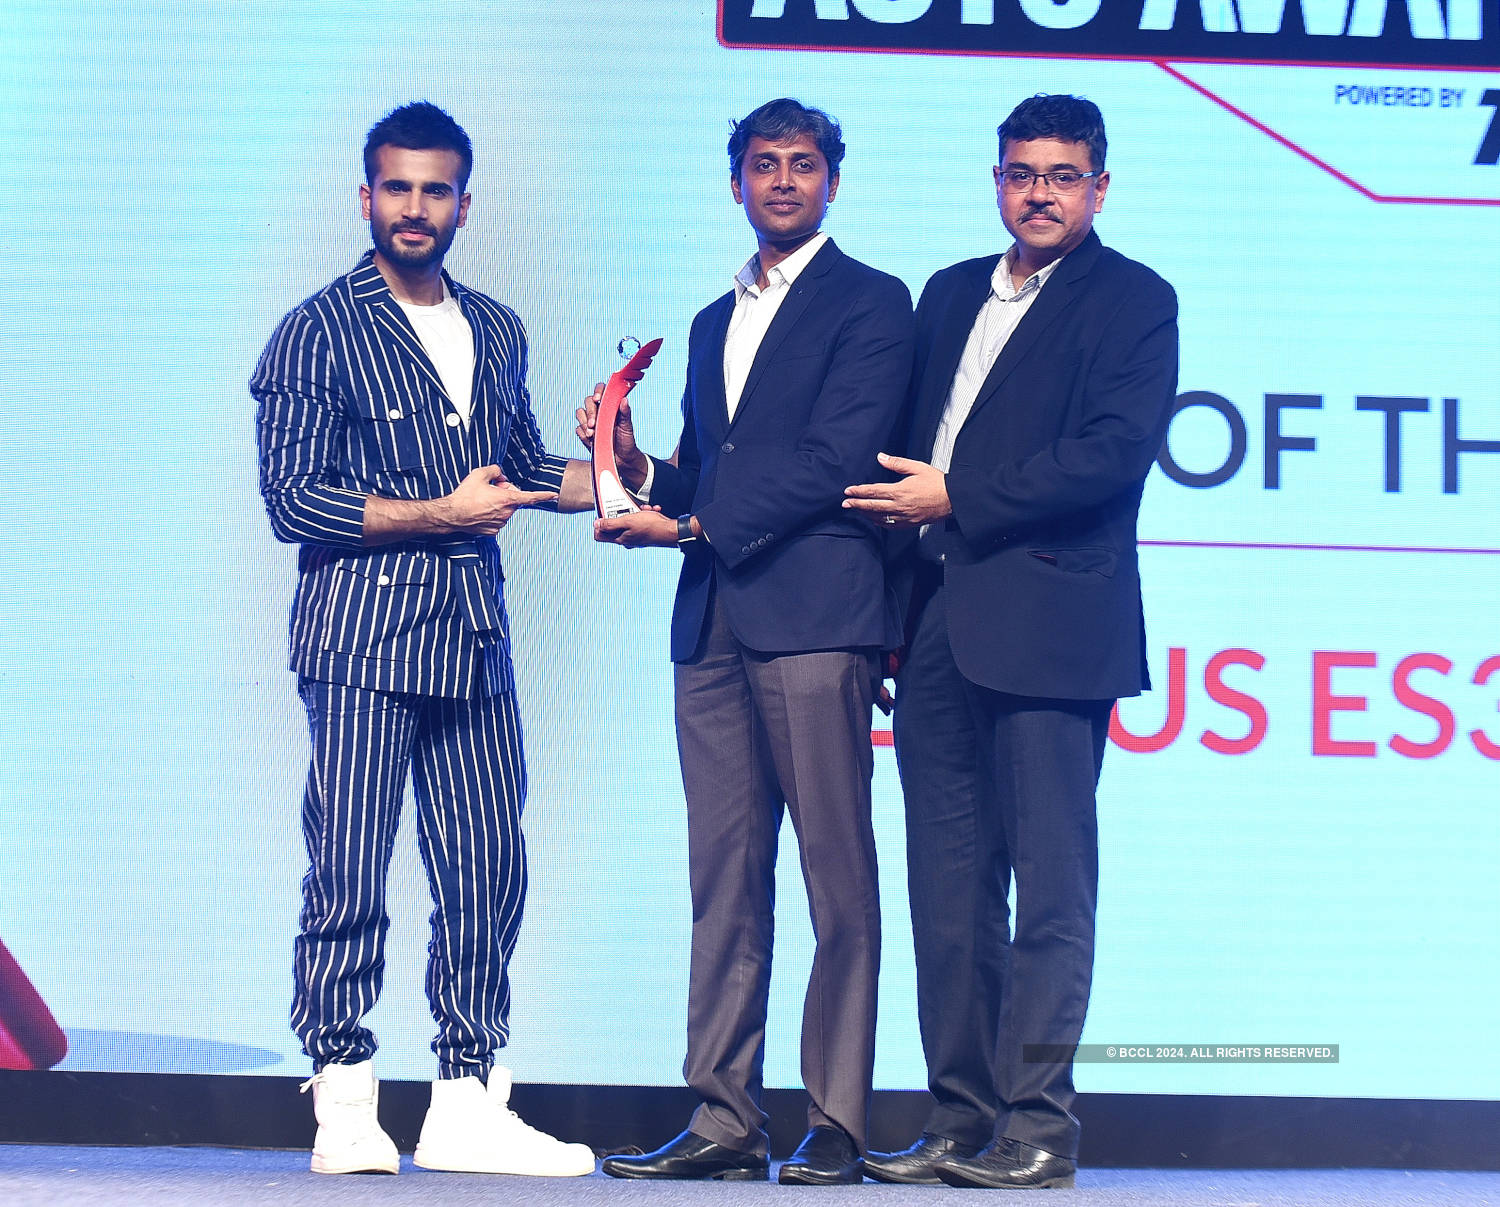 Times Auto Awards '19 - Mumbai: Winners